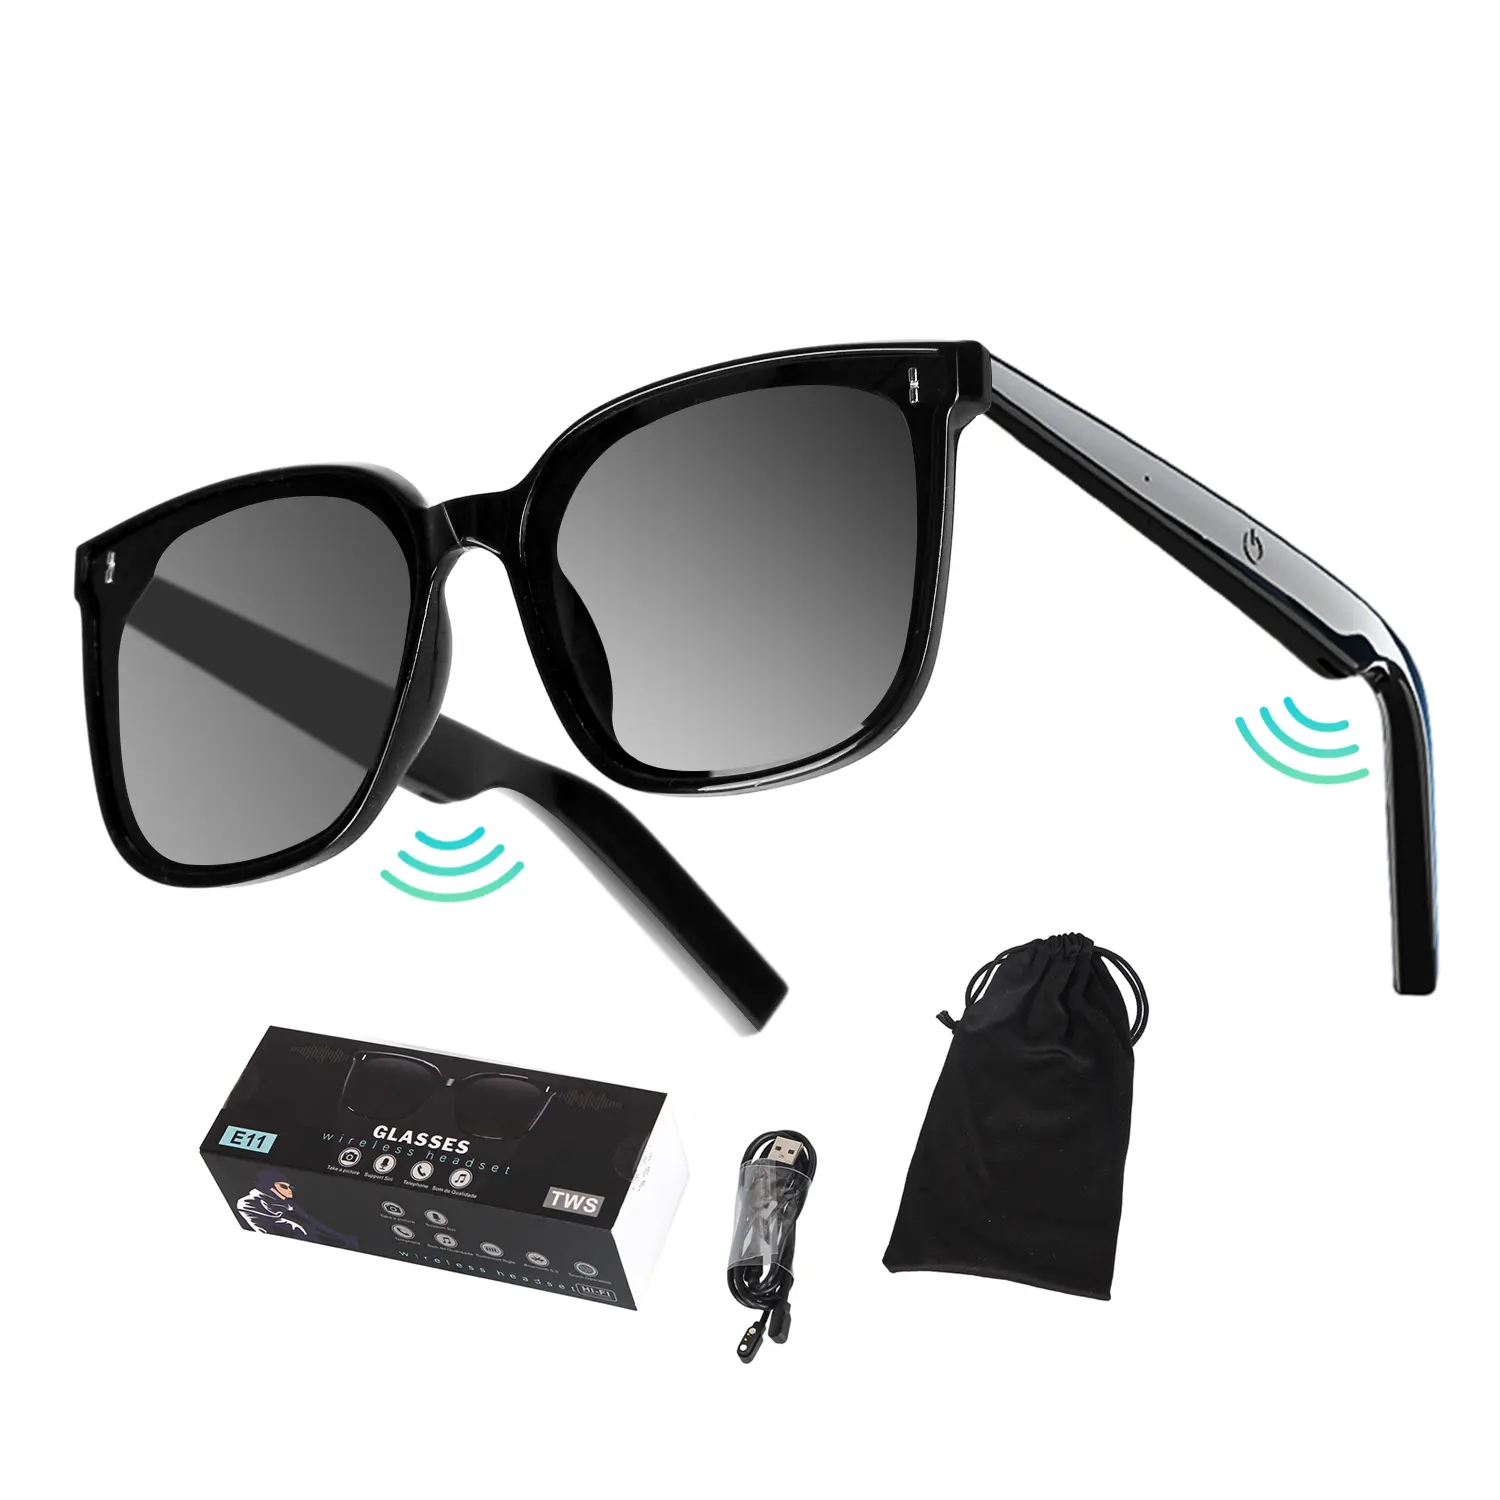 स्मार्ट धूप का चश्मा फैशन टच संगीत खेल Bl0etooth हेडसेट सूरज चश्मा कैमरा आवाज कॉल नियंत्रण MP3 चश्मा आदमी औरत के लिए